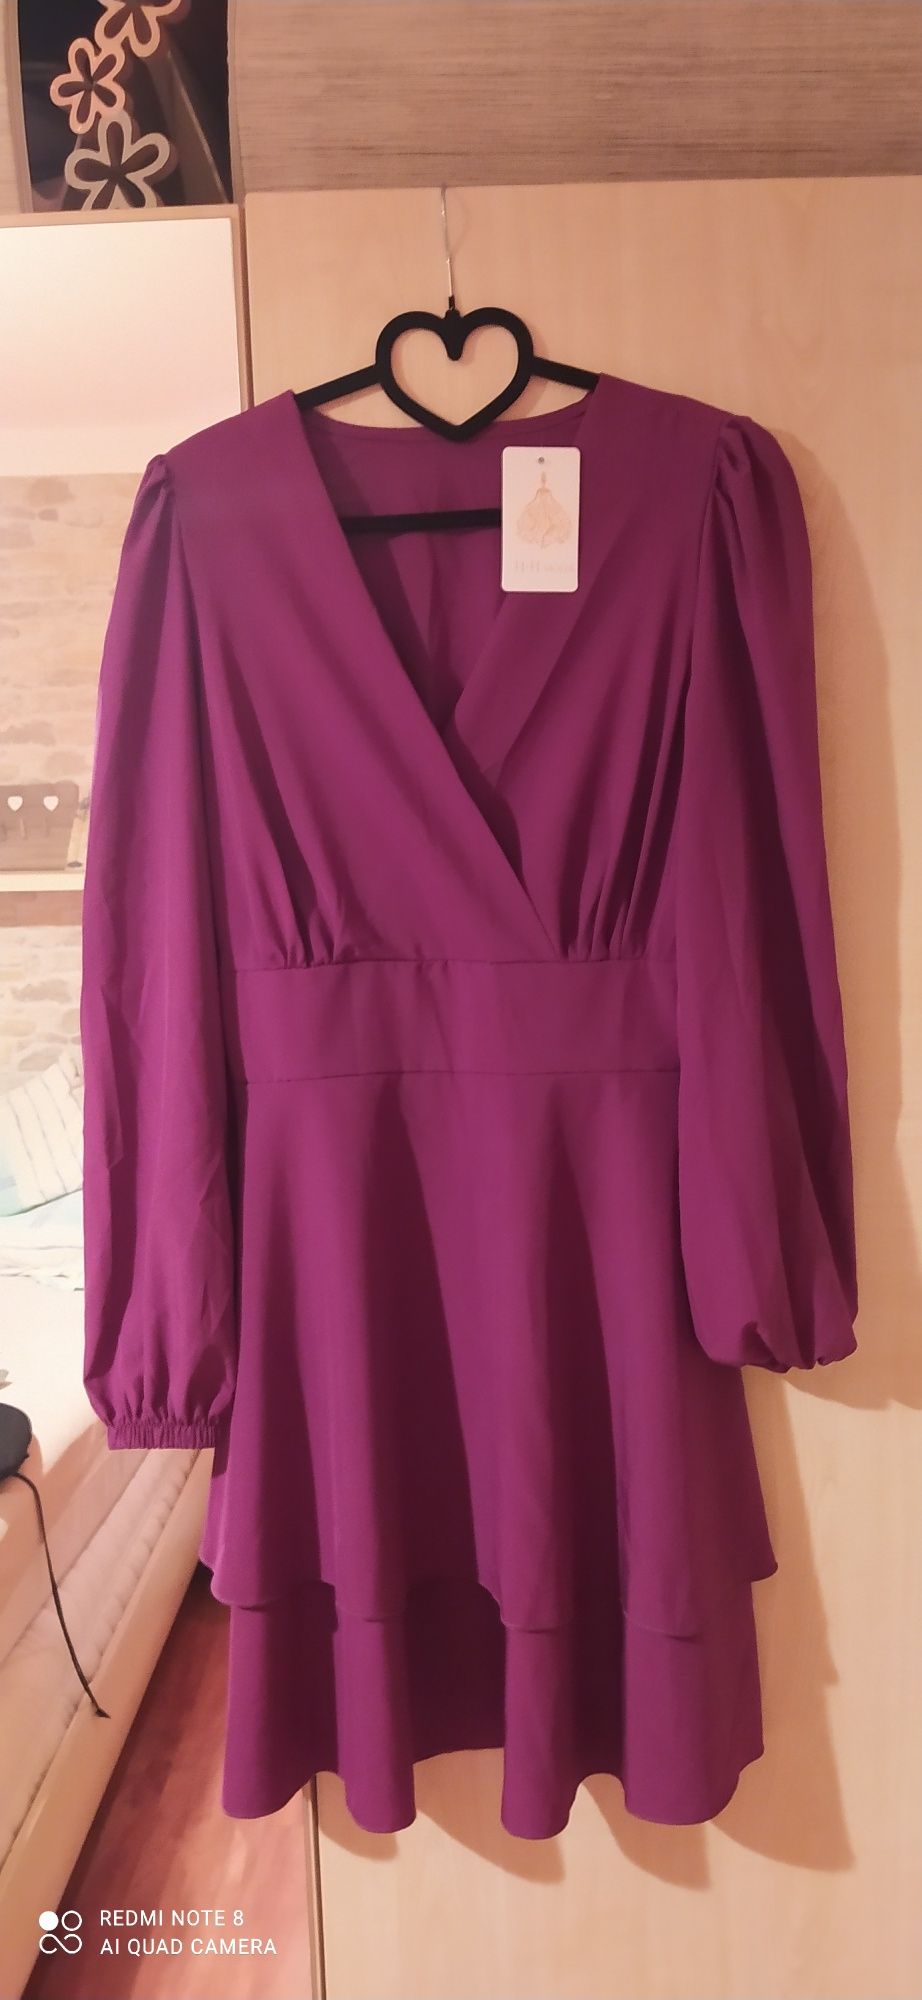 Nowa sukienka włoska, rozmiar uniwersalny M, piękny fiolet